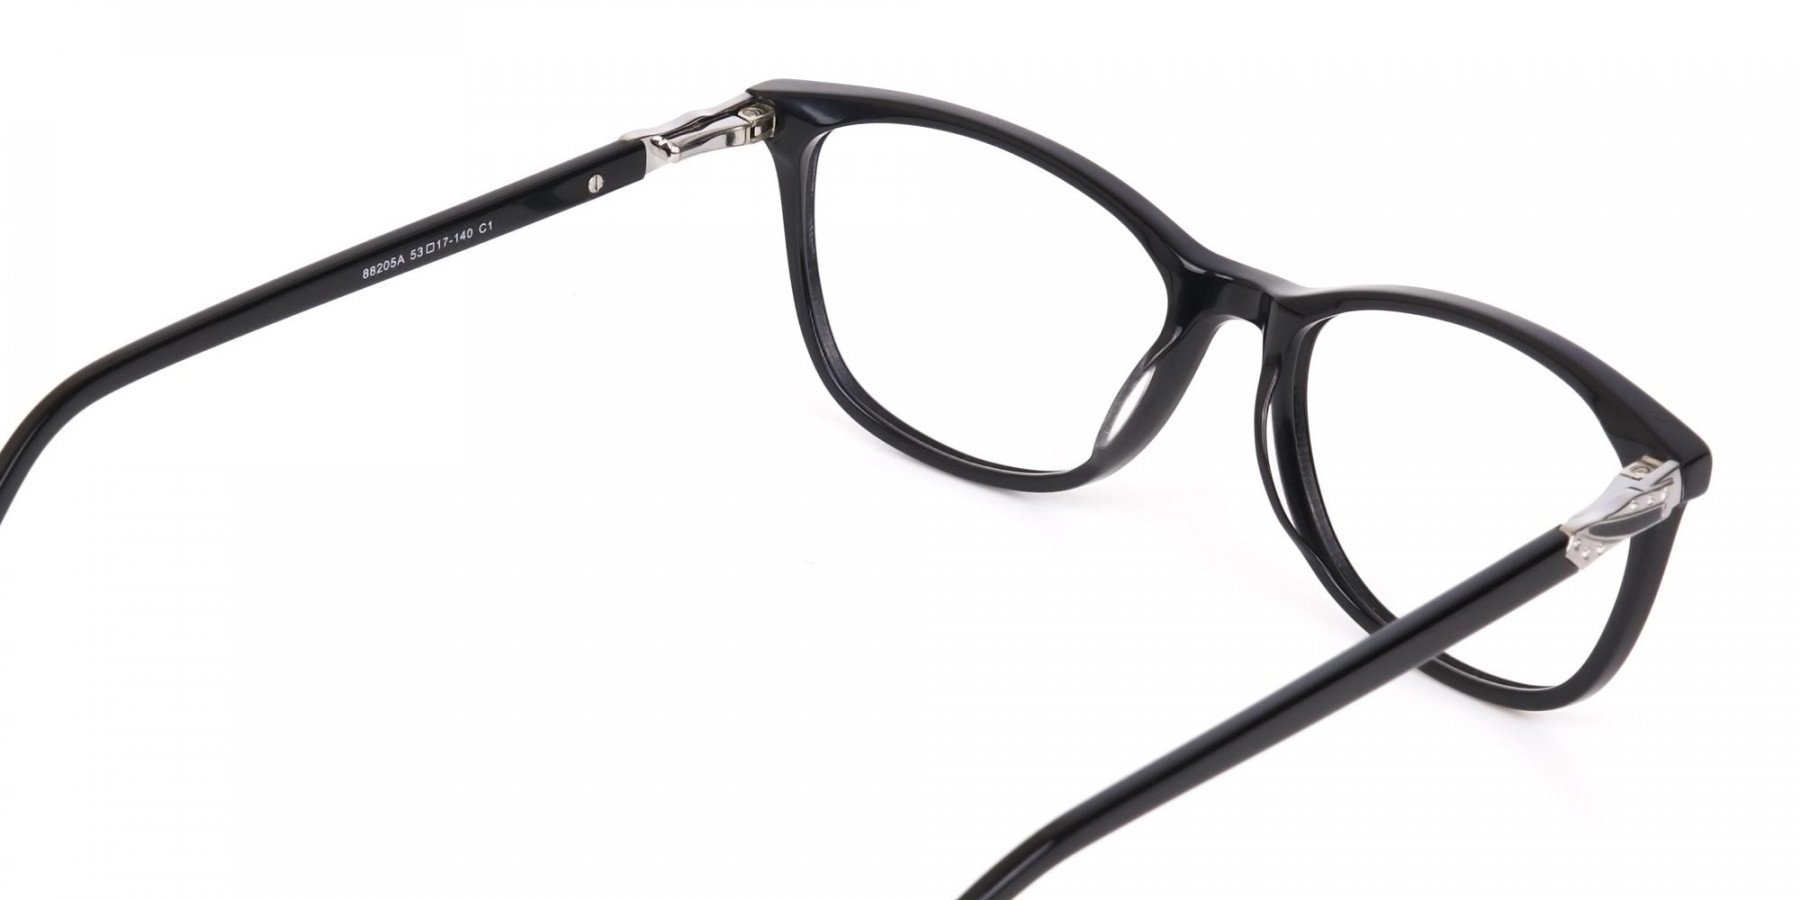 Women Black Acetate Rectangular Glasses Frame-1